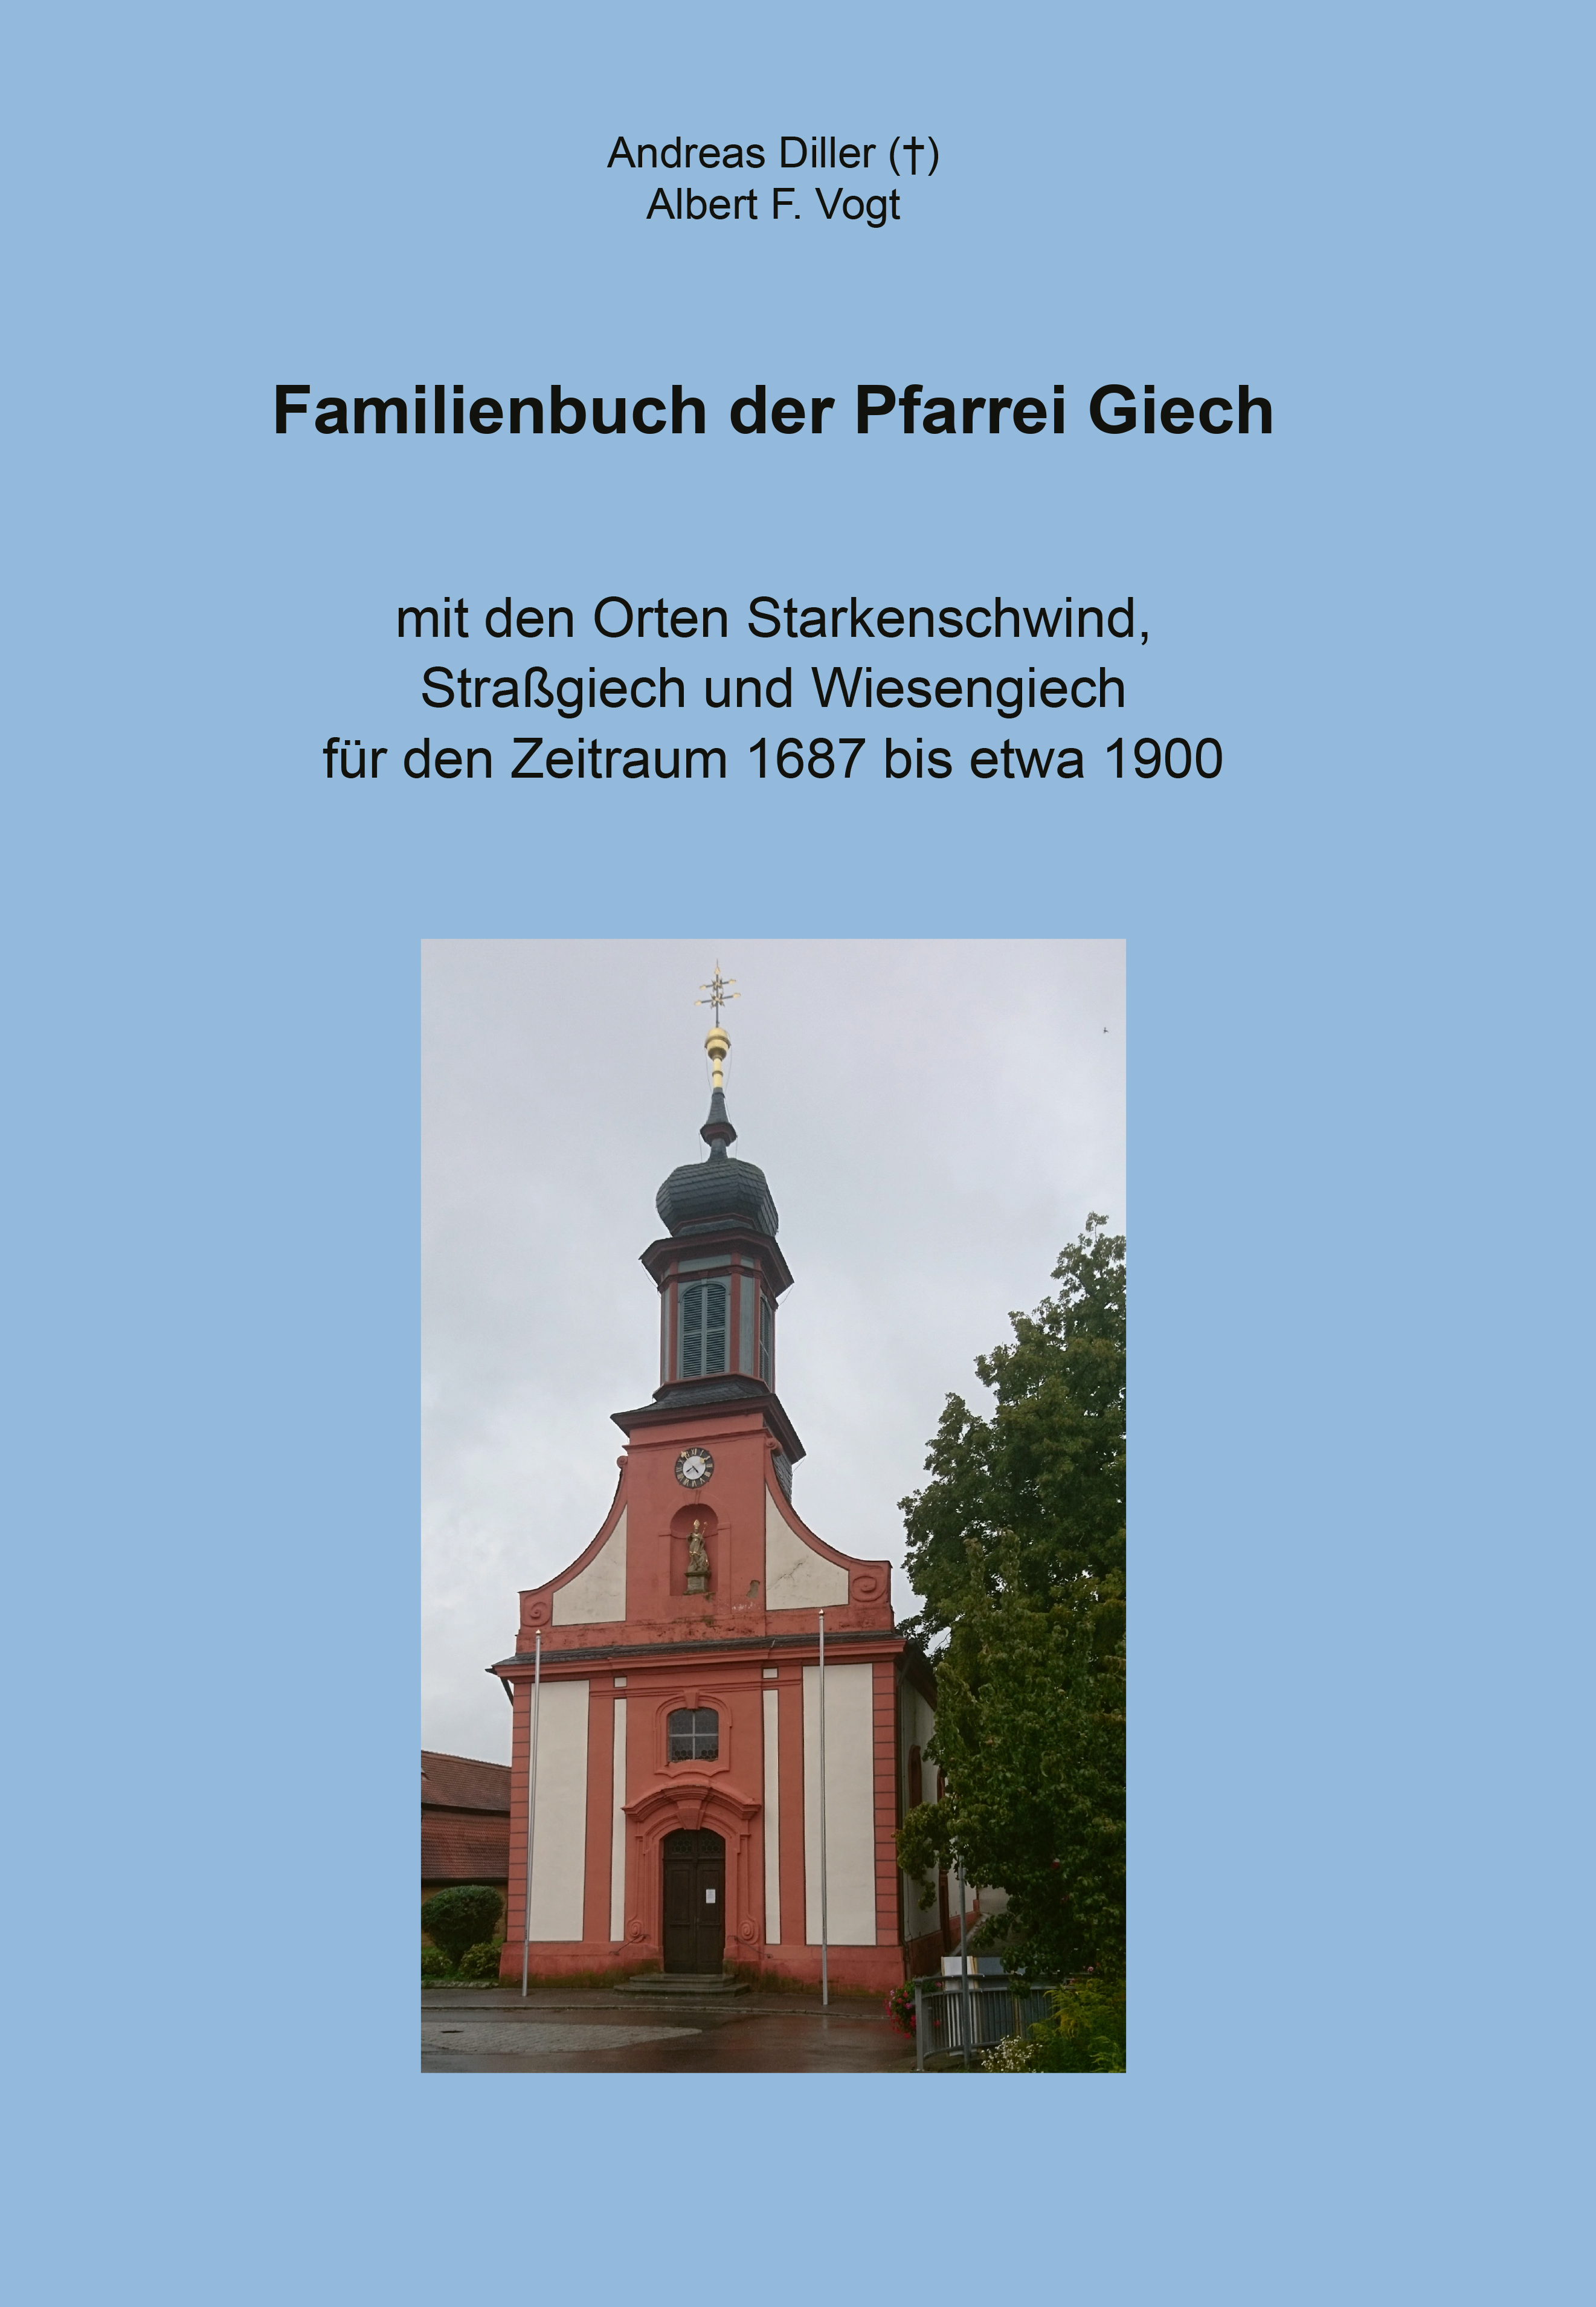 Diller (†) Andreas,  Vogt Albert F., Archiv des Erzbistums Bamberg/Kulturstiftung Andreas Diller - Familienbuch der Pfarrei Giech